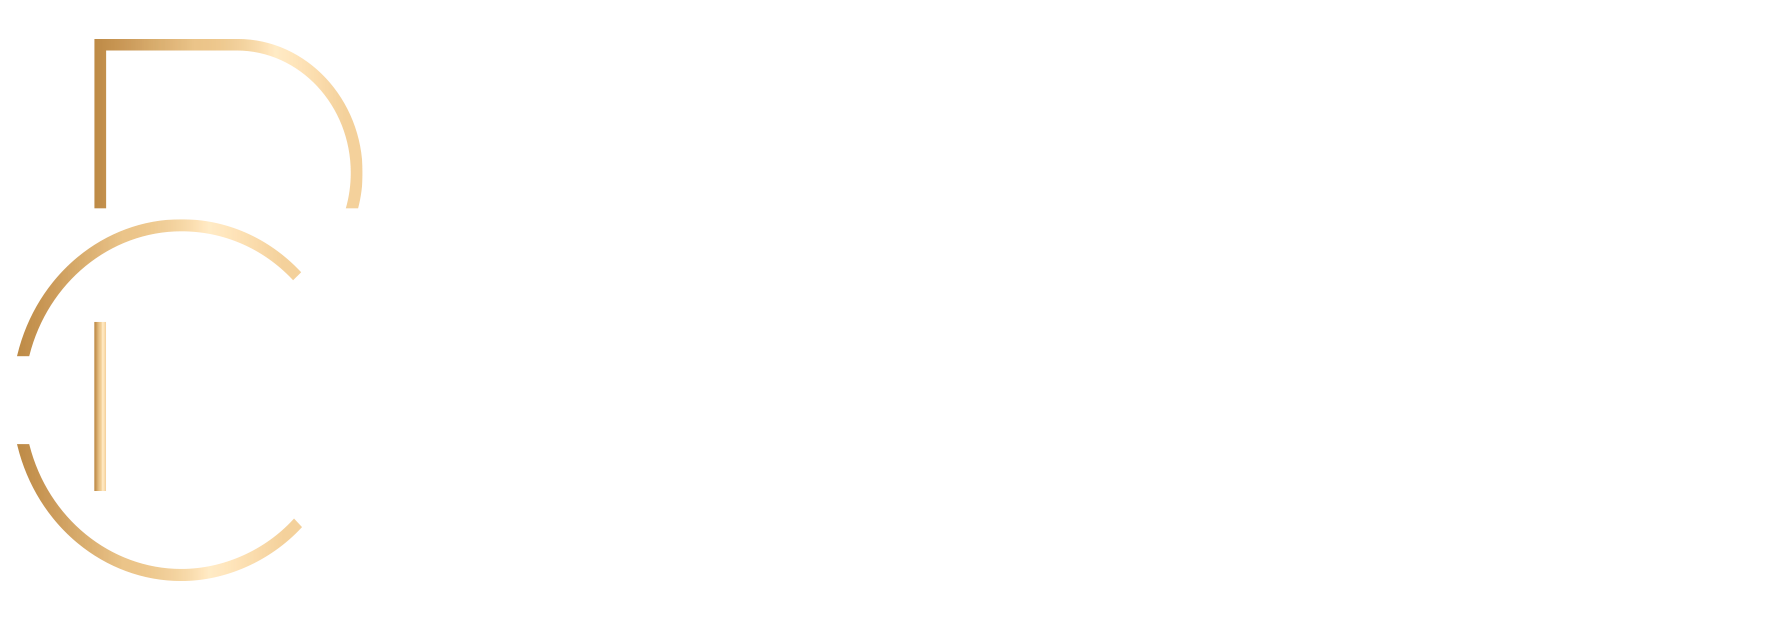 Patricia Carneiro Advocacia & Consultoria Jurídica